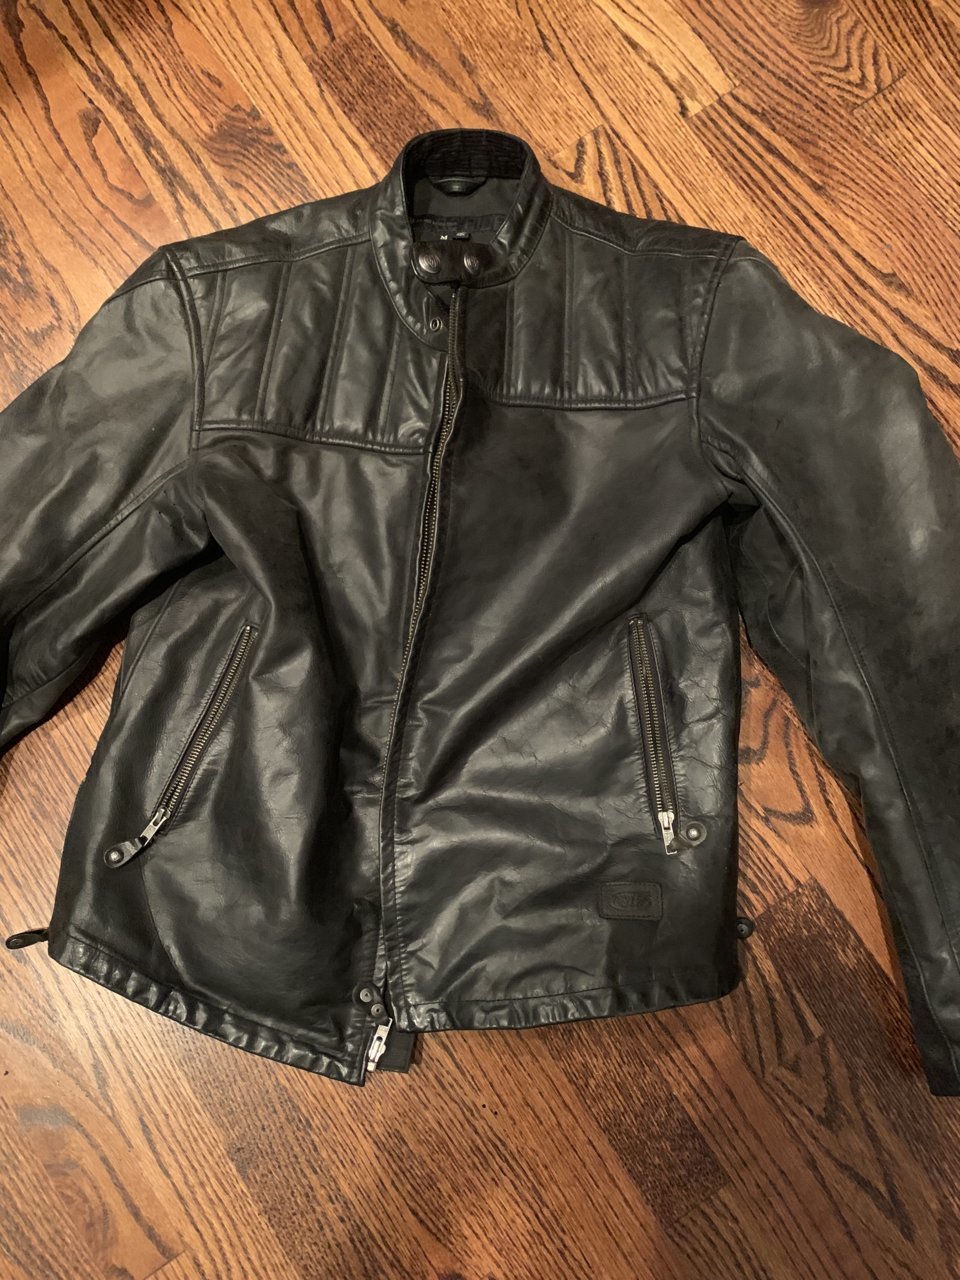 Roland Sands Leather Motorcycle Jacket $200 | Tacoma World